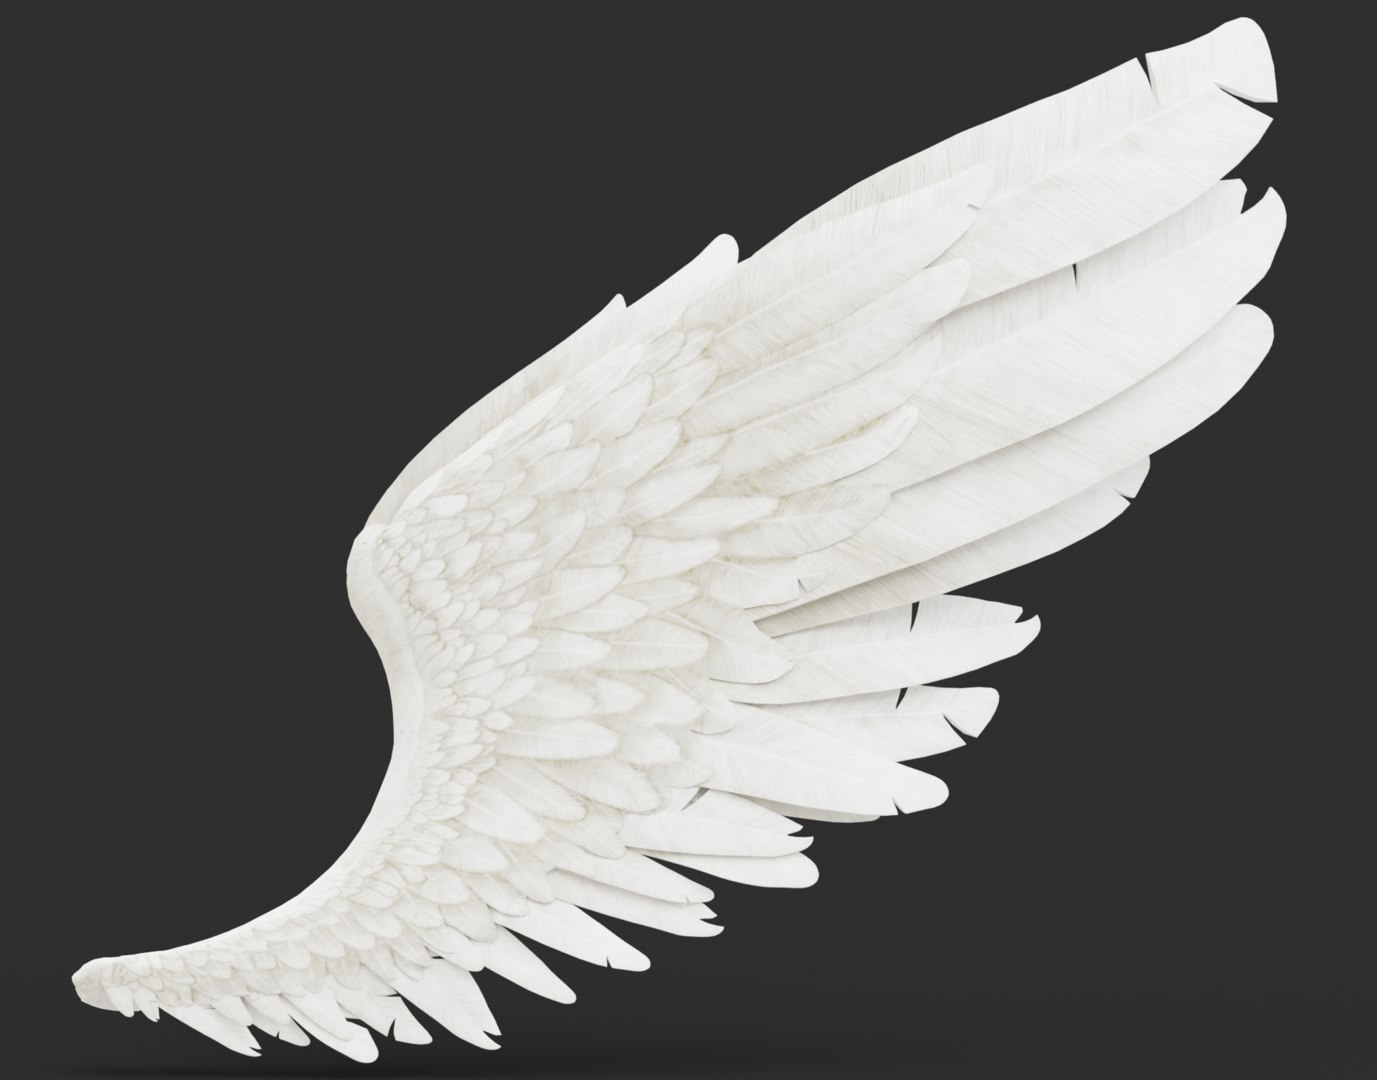 祈祷天使的翅膀桌面壁纸-壁纸图片大全